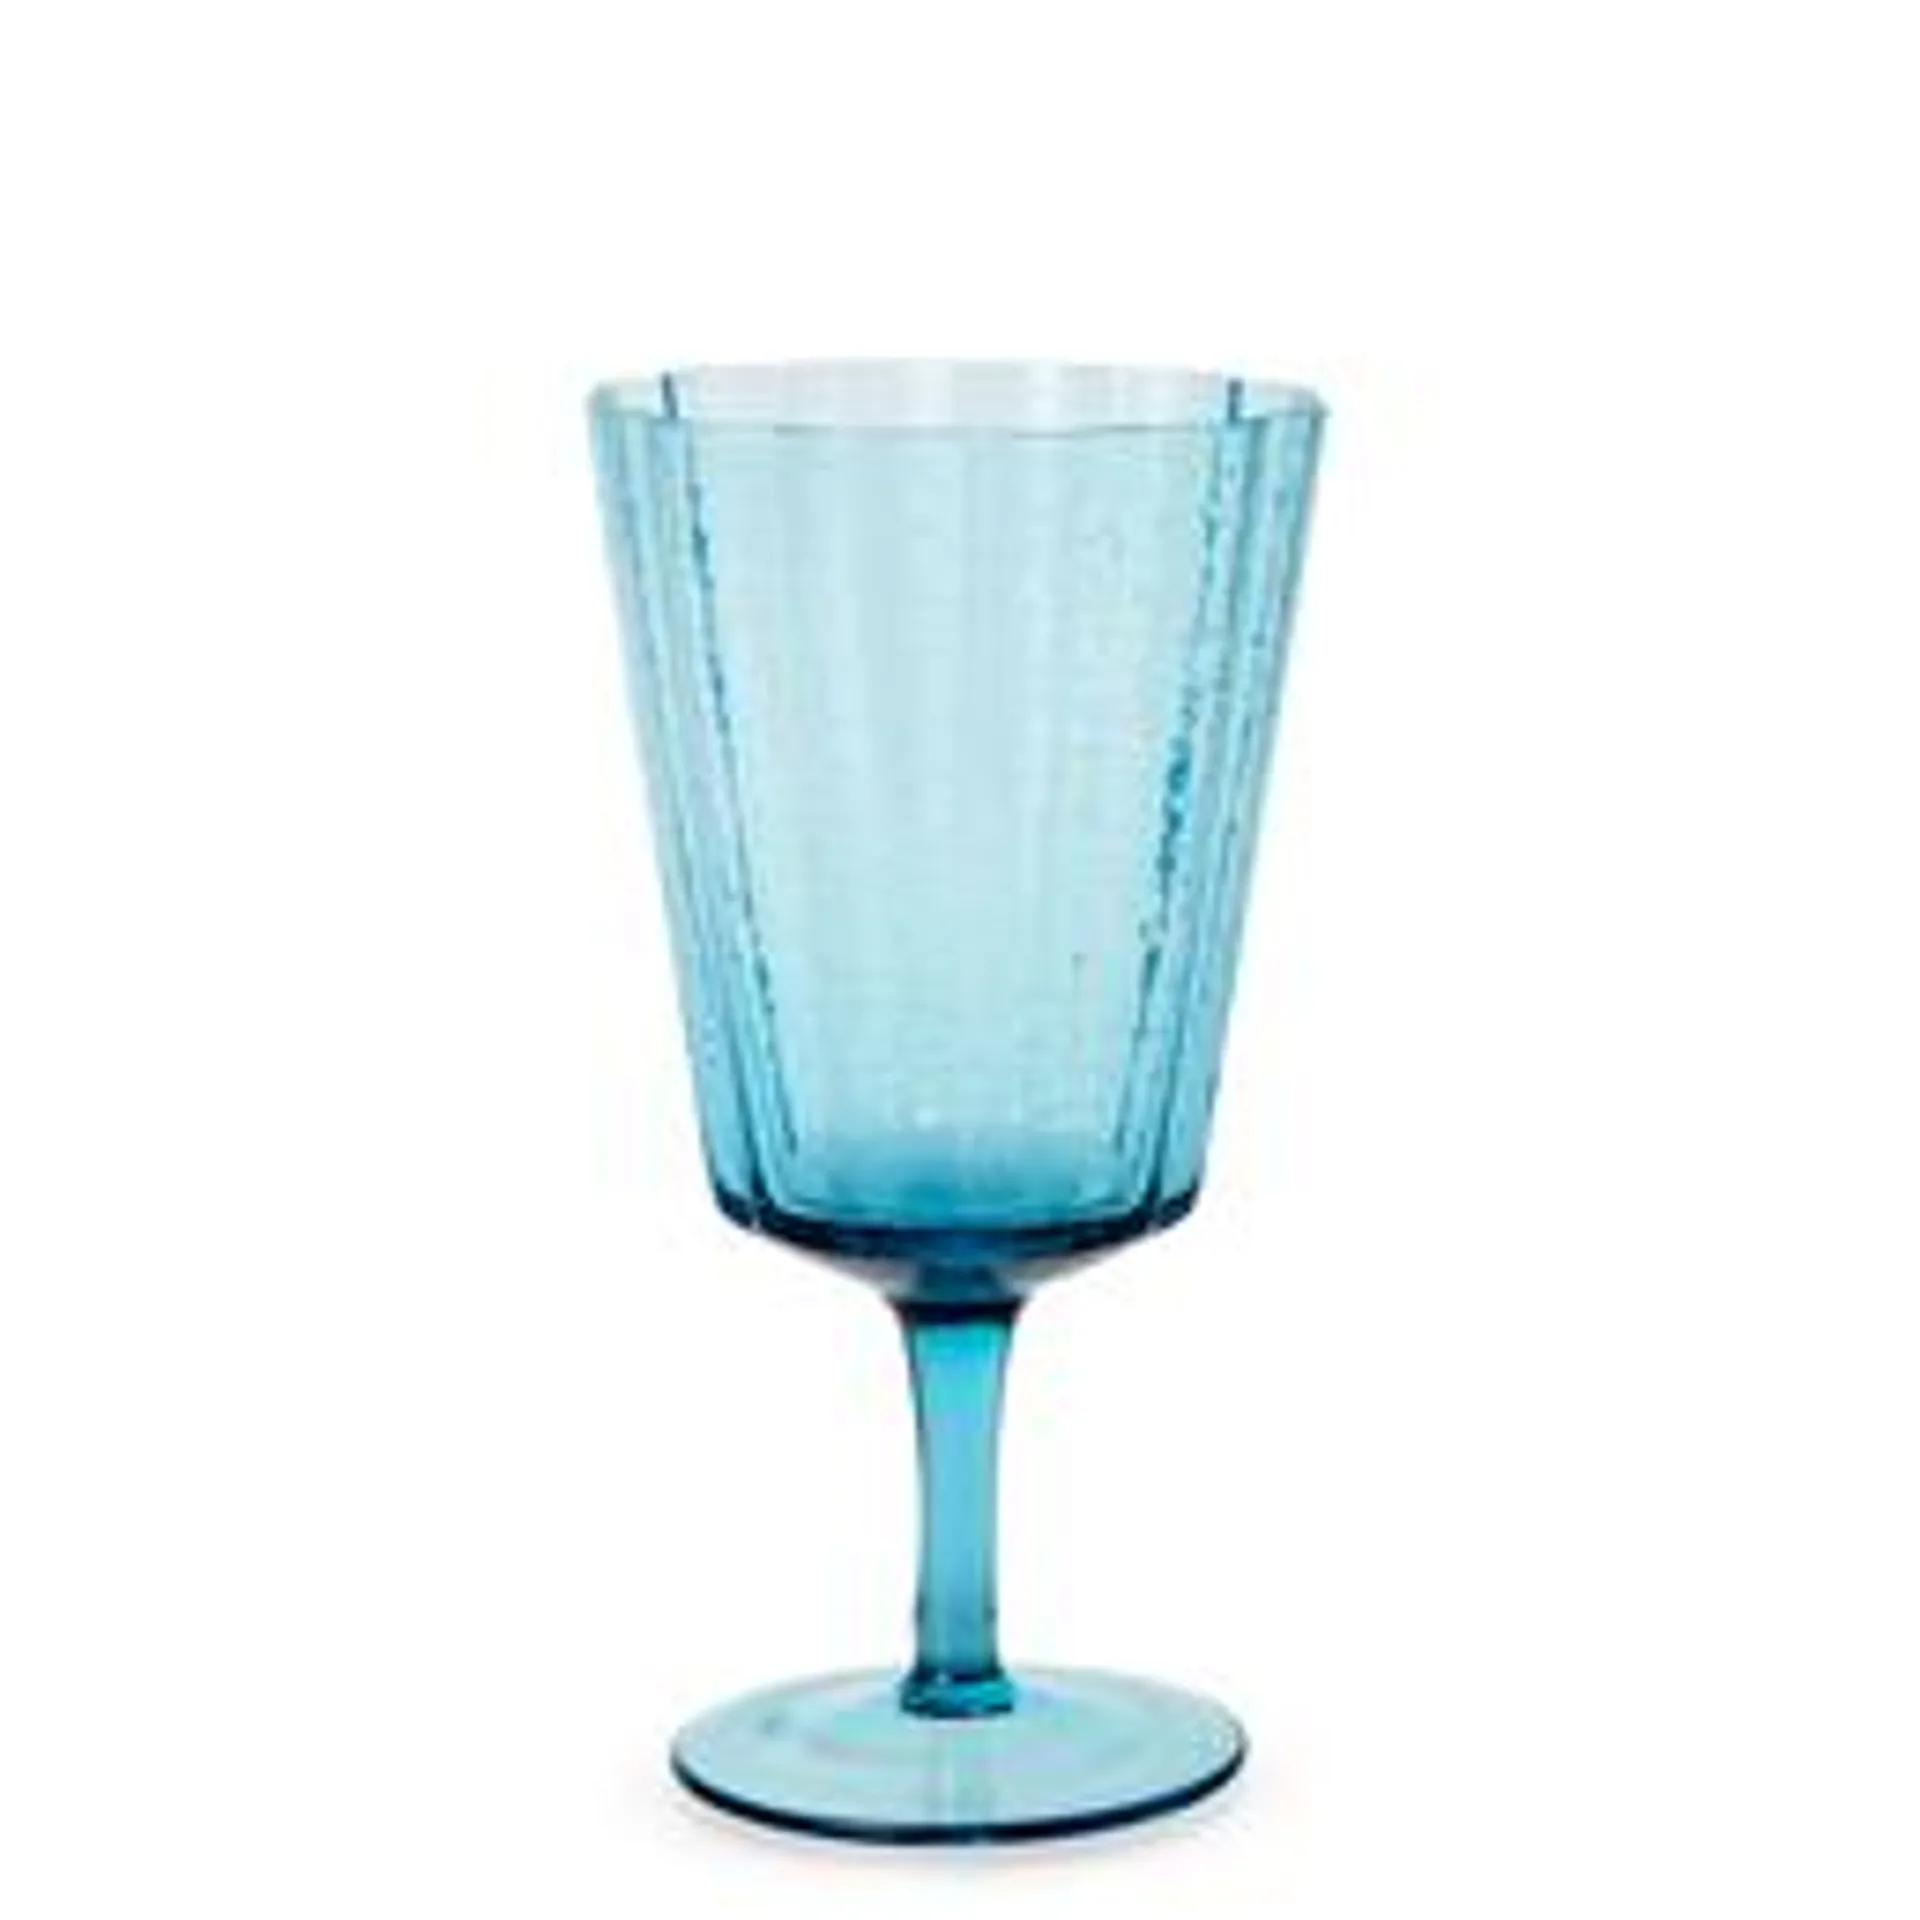 Stevens Crimp Wine Glass, 17cm, Blue